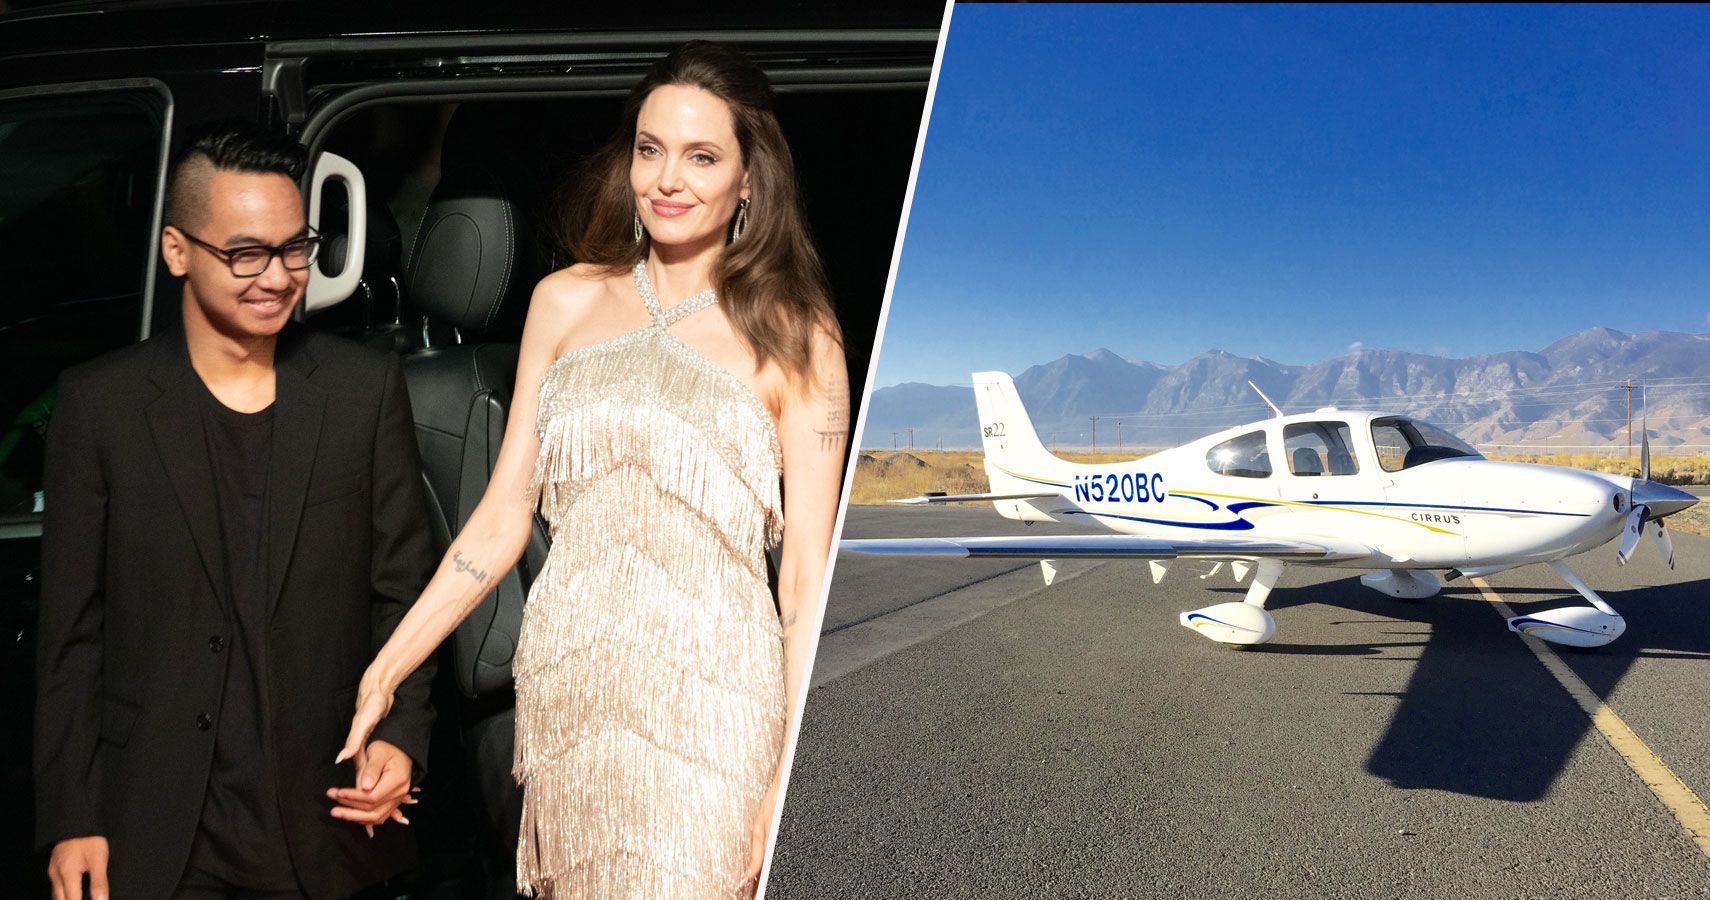 O filho de Angelina Jolie a inspirou a pilotar aviões